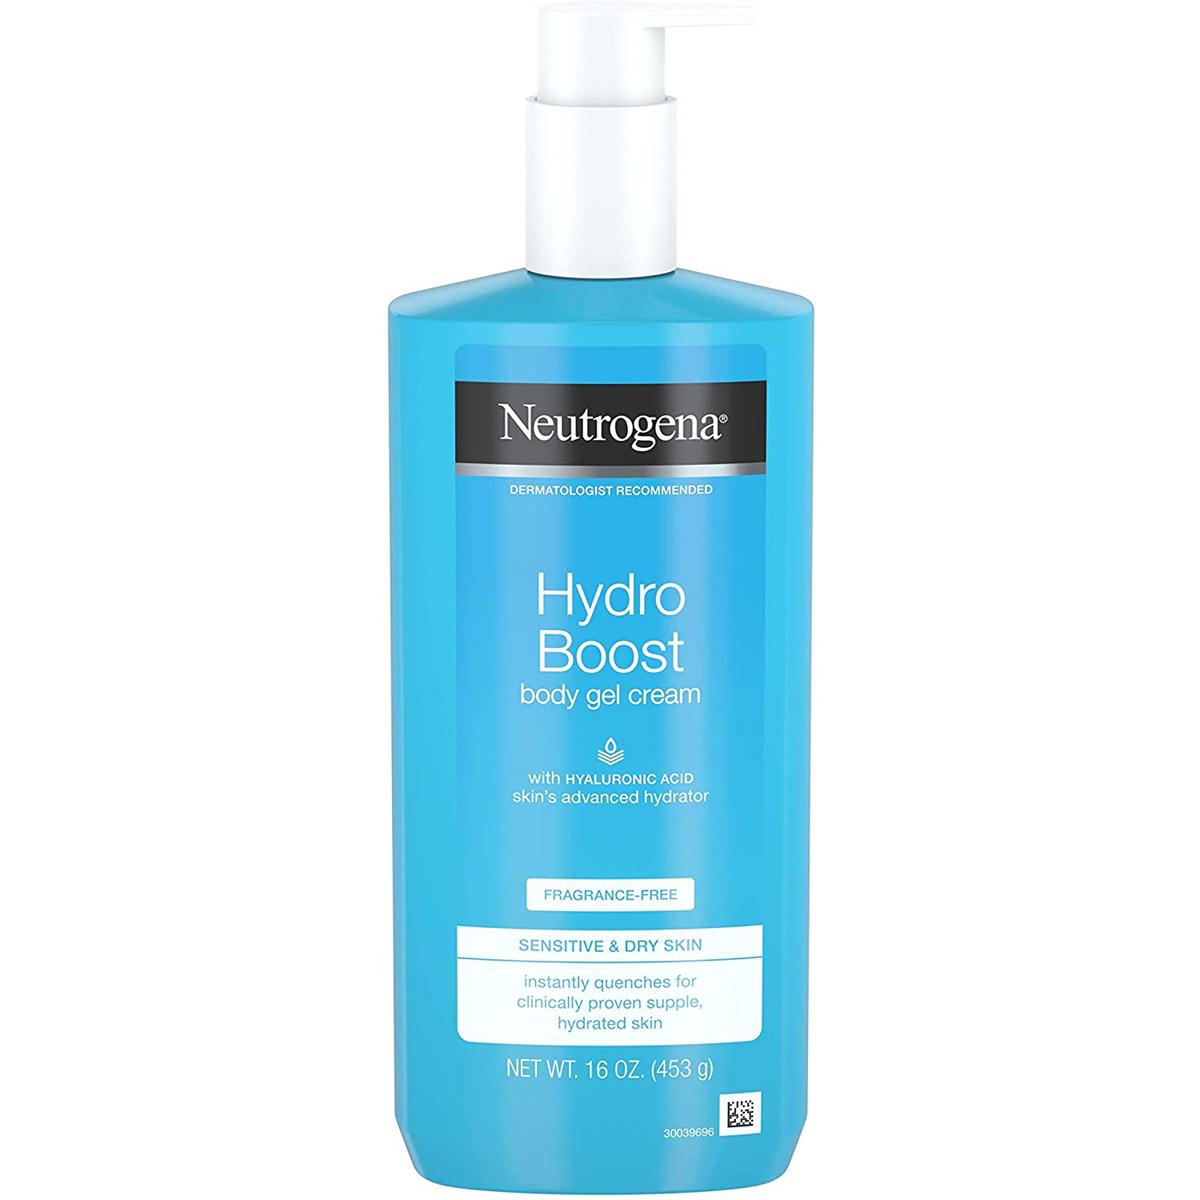 Neutrogena 16oz Hydro Boost Hydrating Body Gel Cream for $3.69 Shipped